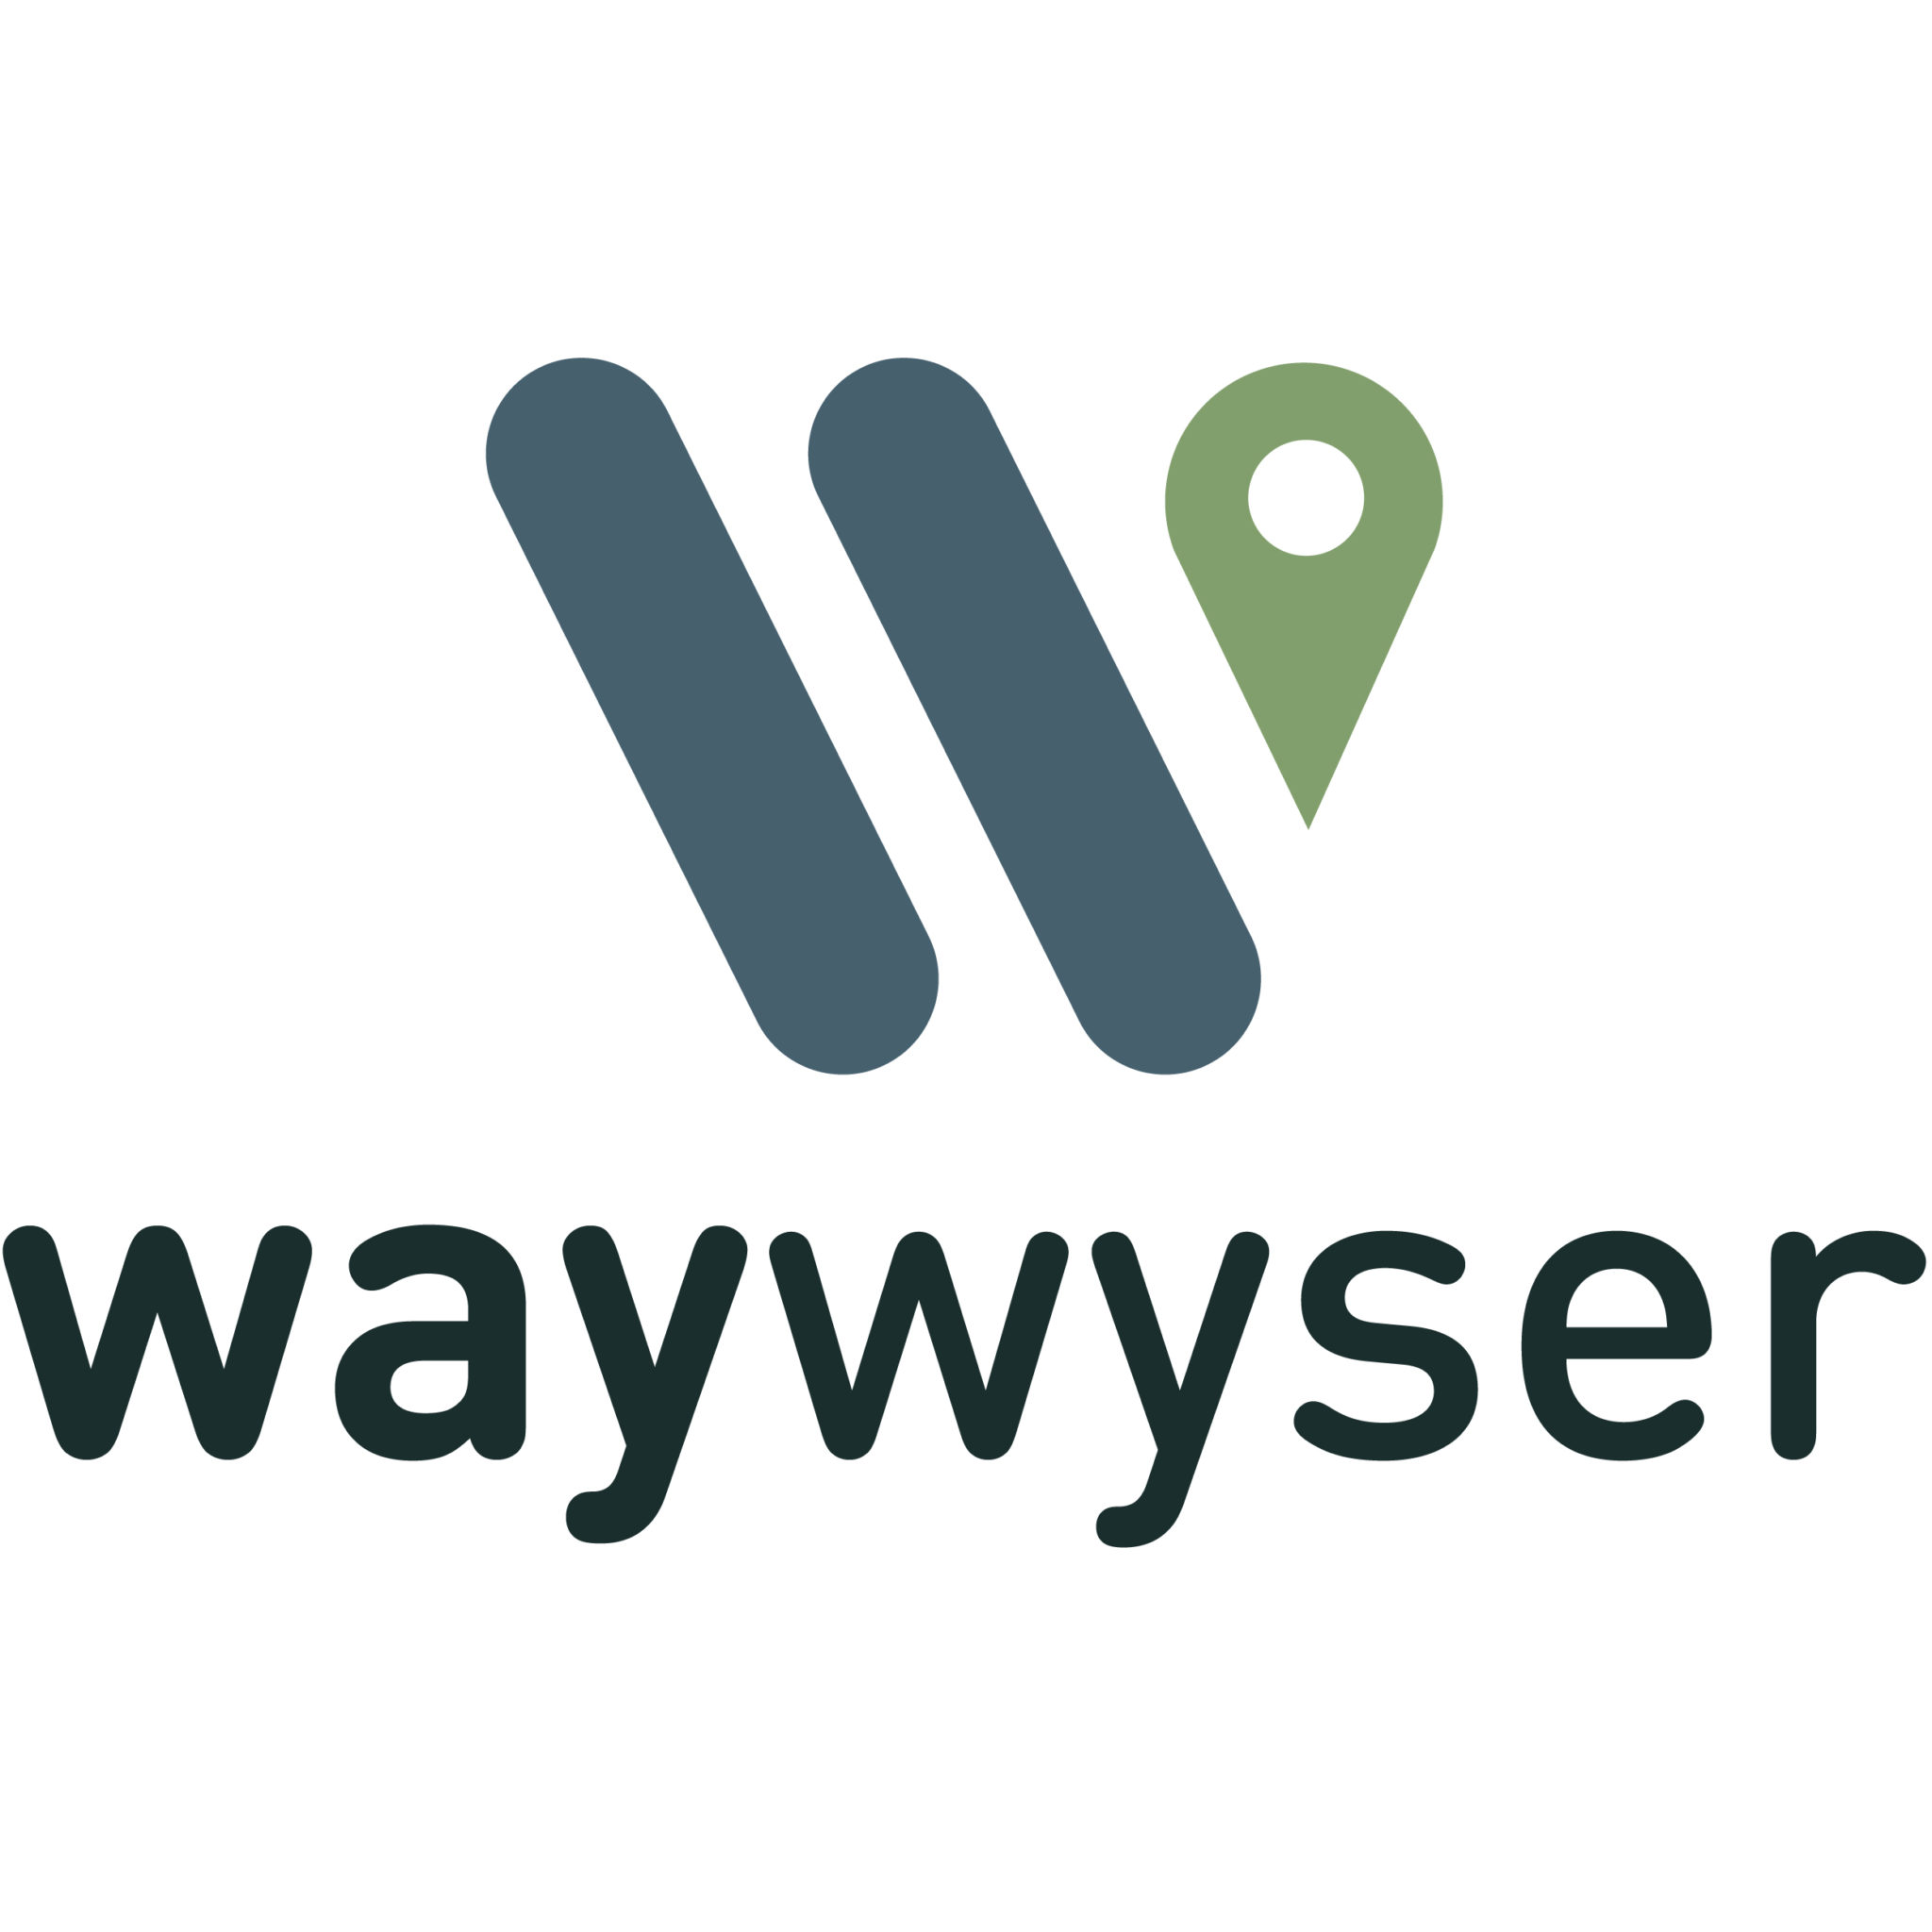 Waywyser email signature 01